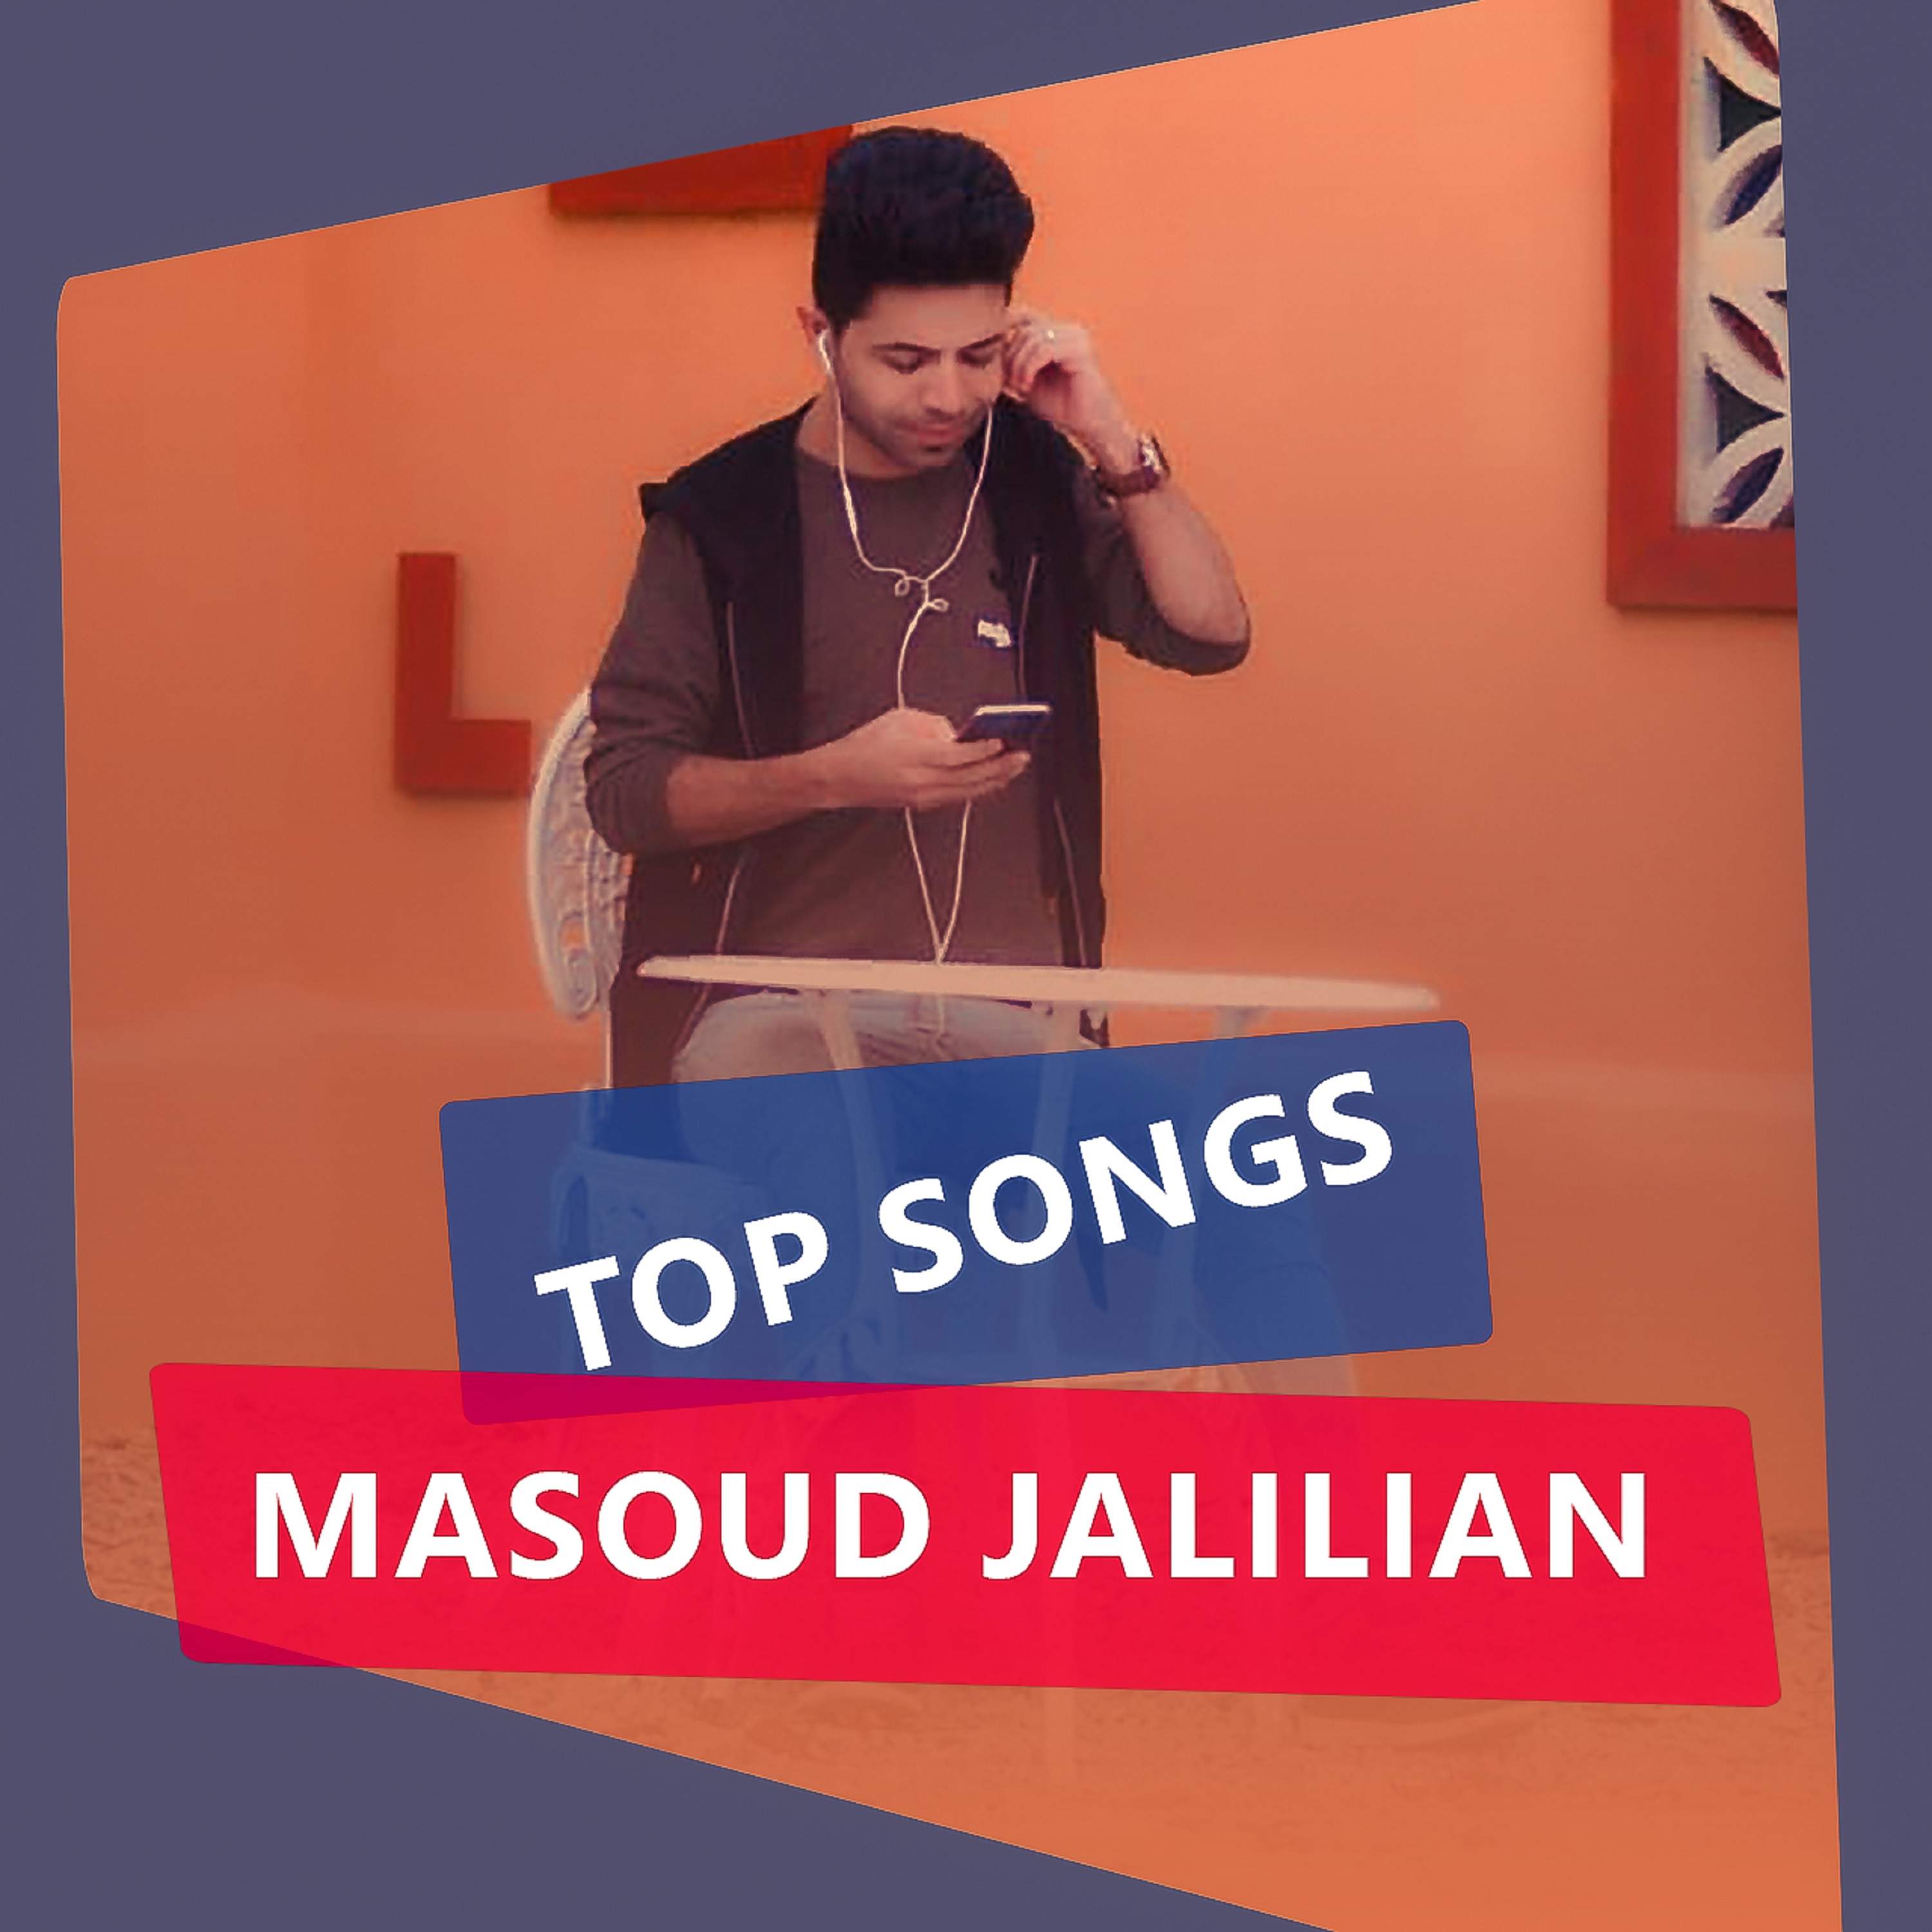  دانلود آهنگ جدید مسعود جلیلیان - بی کسی | Download New Music By Masoud Jalilian - Bi Kasi (feat. Saeed Shokoohi)